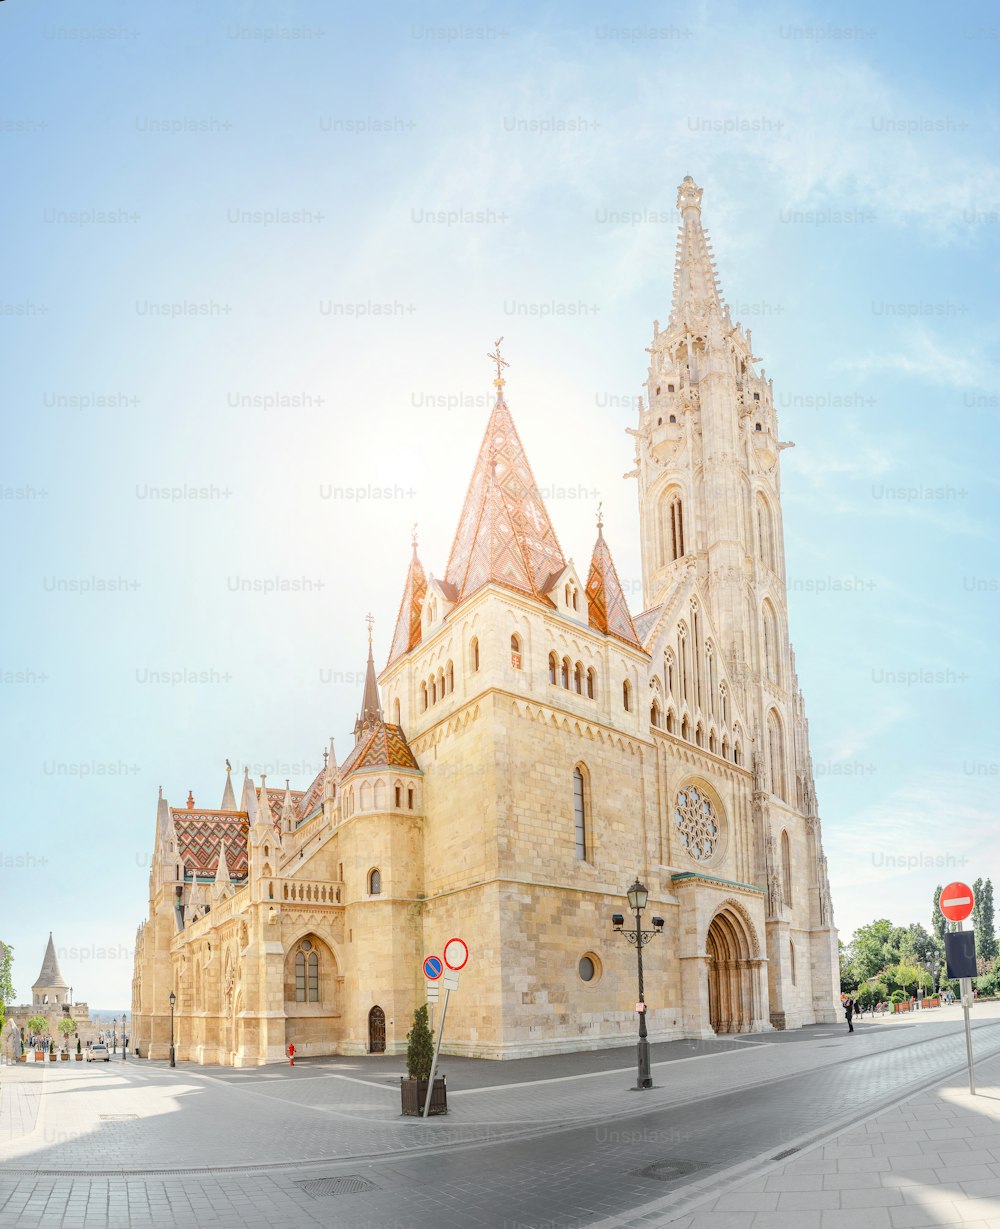 Principale attrazione turistica e punto di riferimento di Budapest - straordinaria architettura della Cattedrale di San Mattia. La chiesa è il più grande tempio gotico dell'Ungheria.